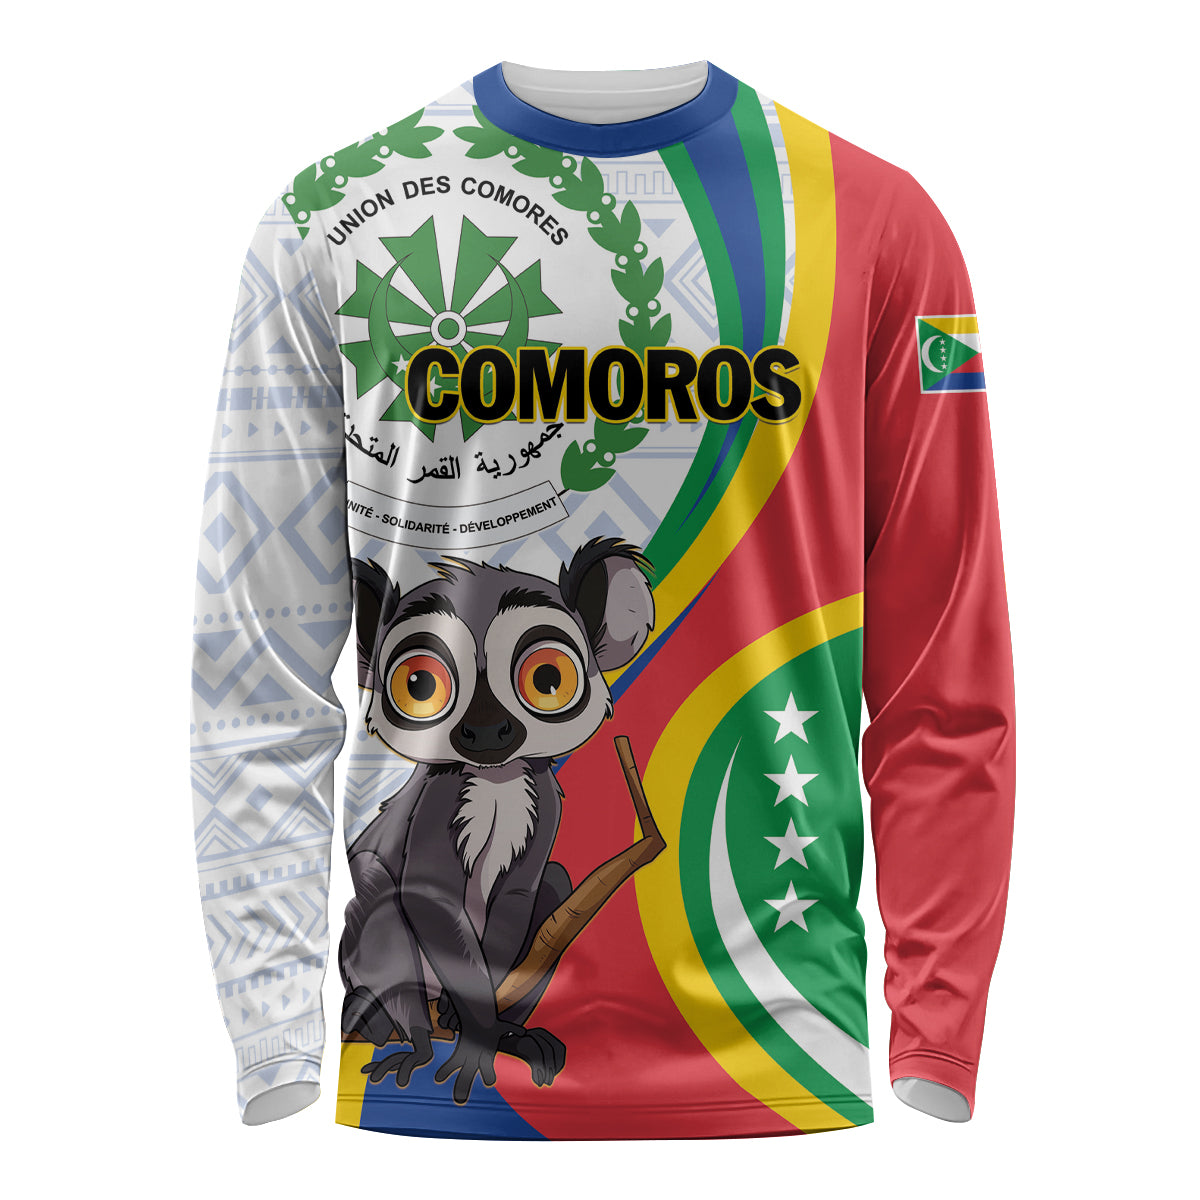 Comoros Independence Day Long Sleeve Shirt 1975 Komori Mongoose Lemur African Pattern